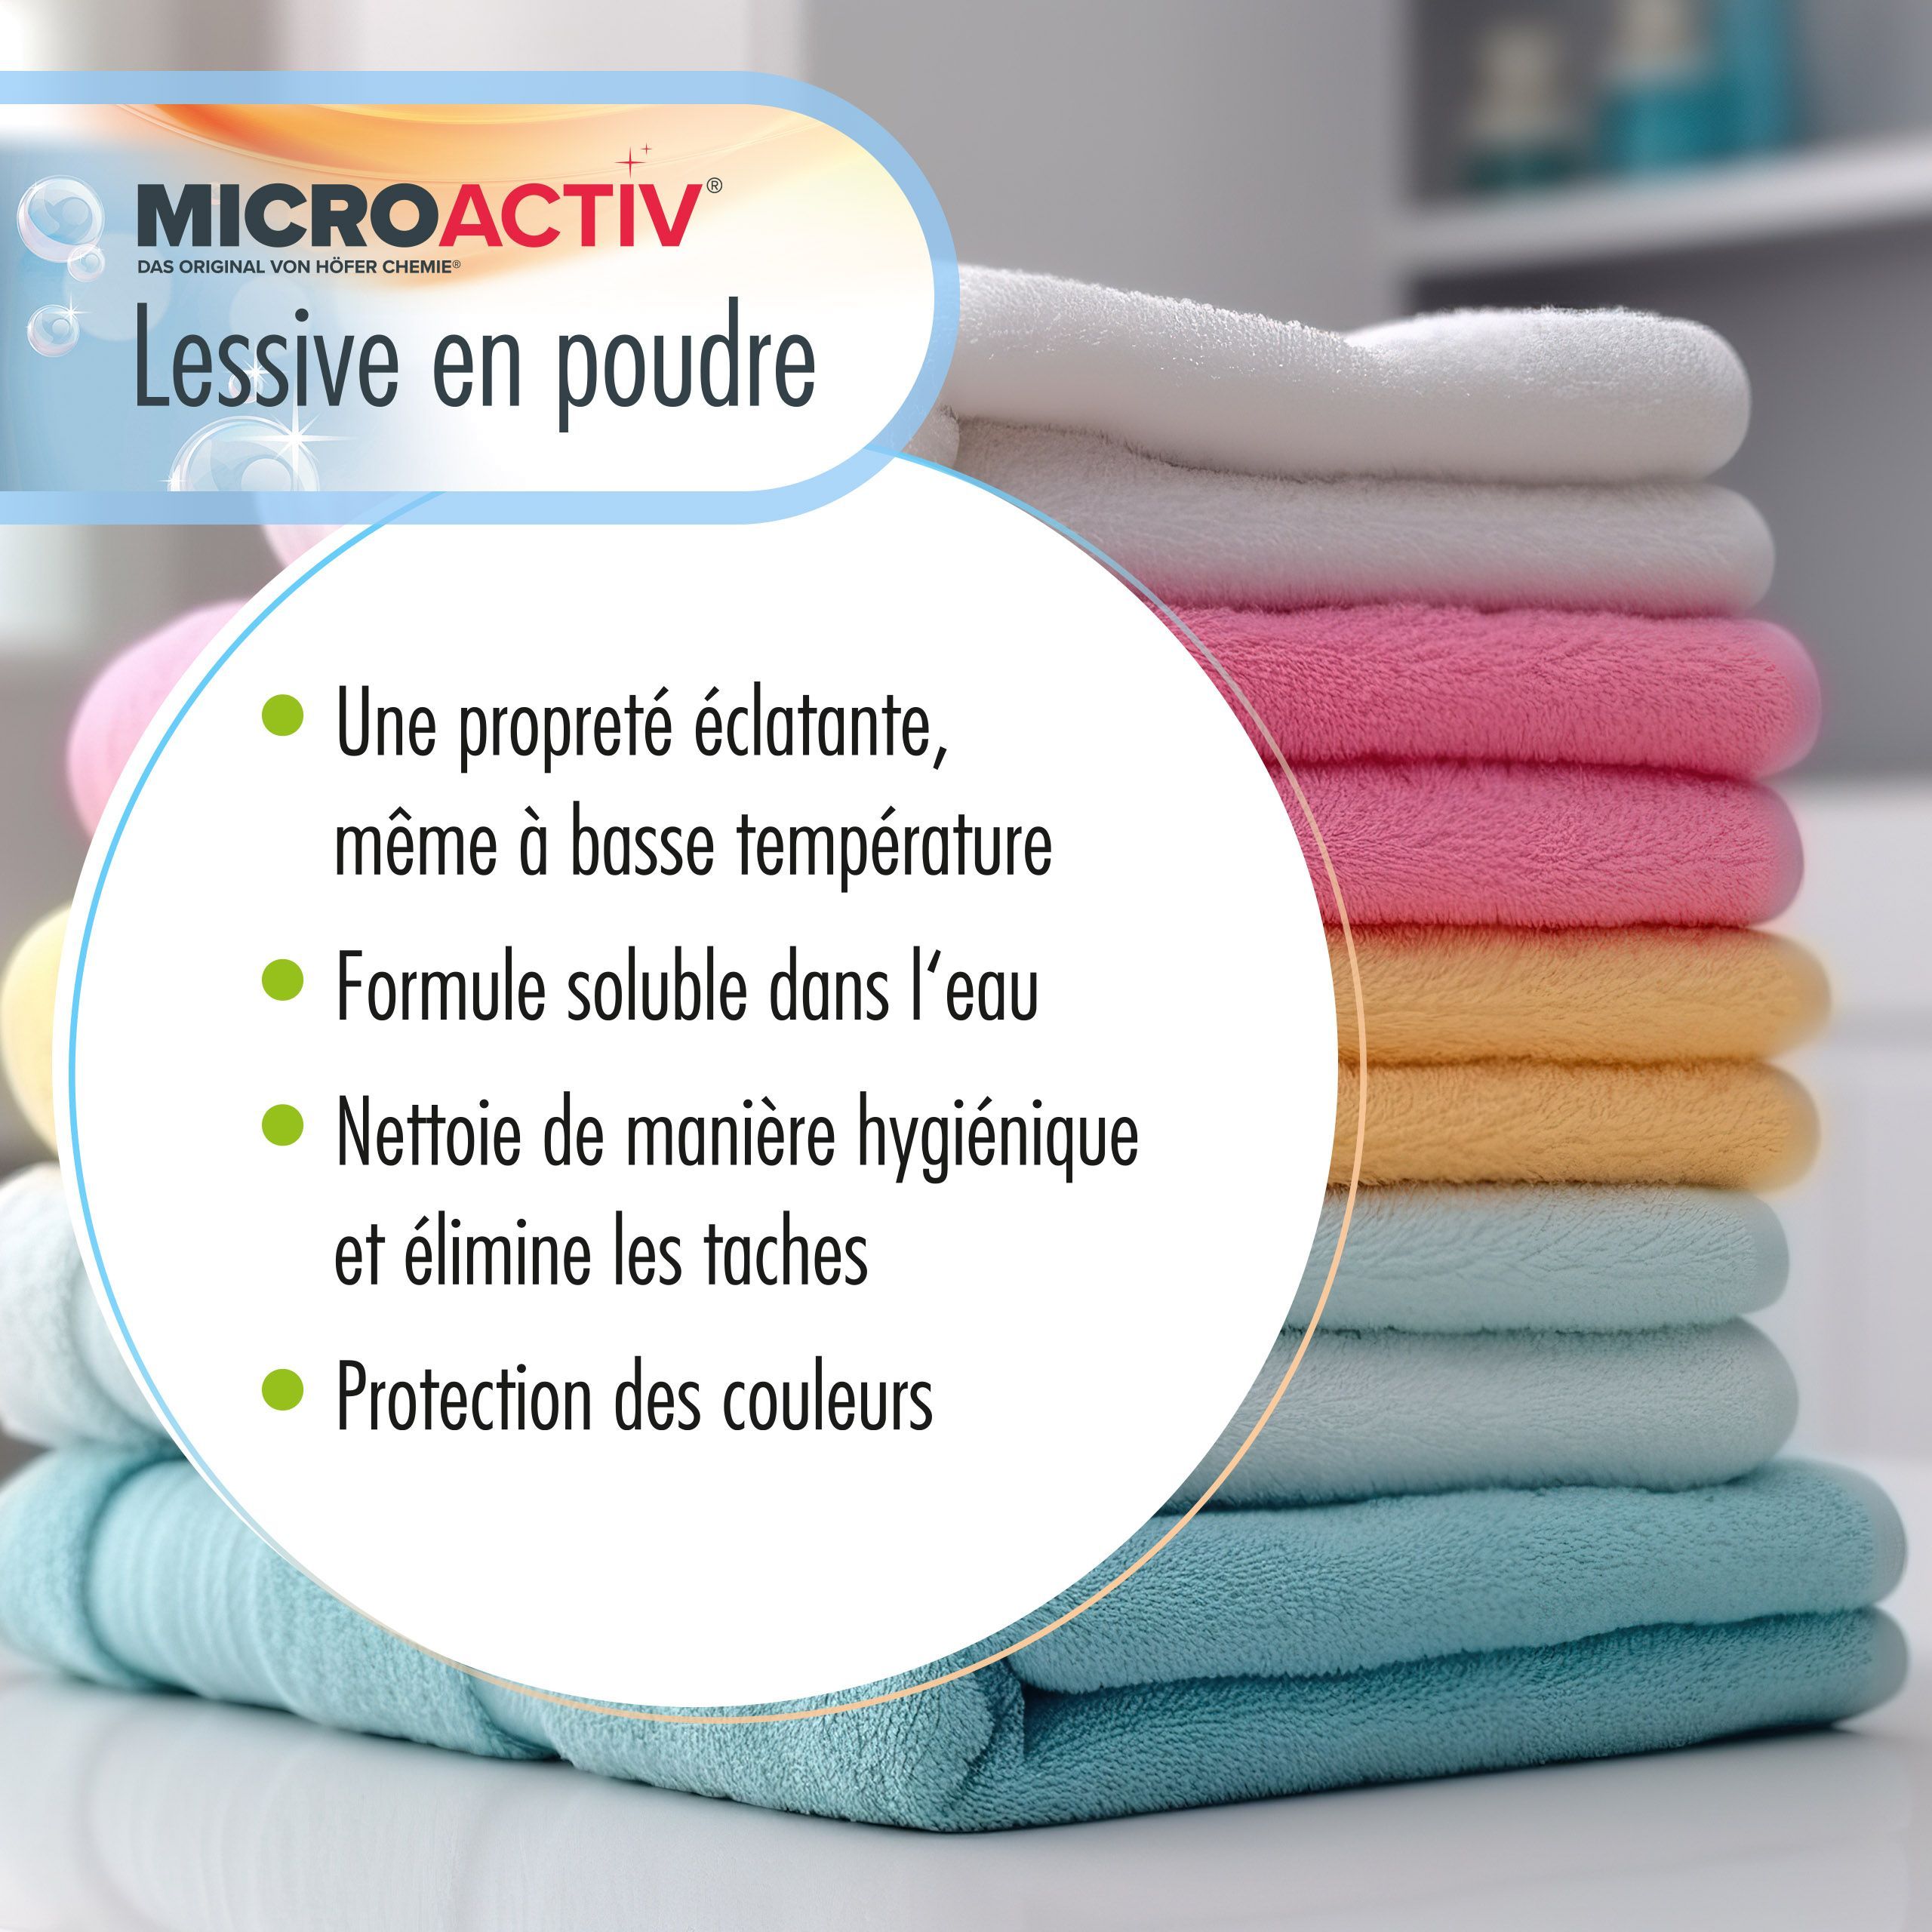 10 kg de lessive en poudre Microactiv®